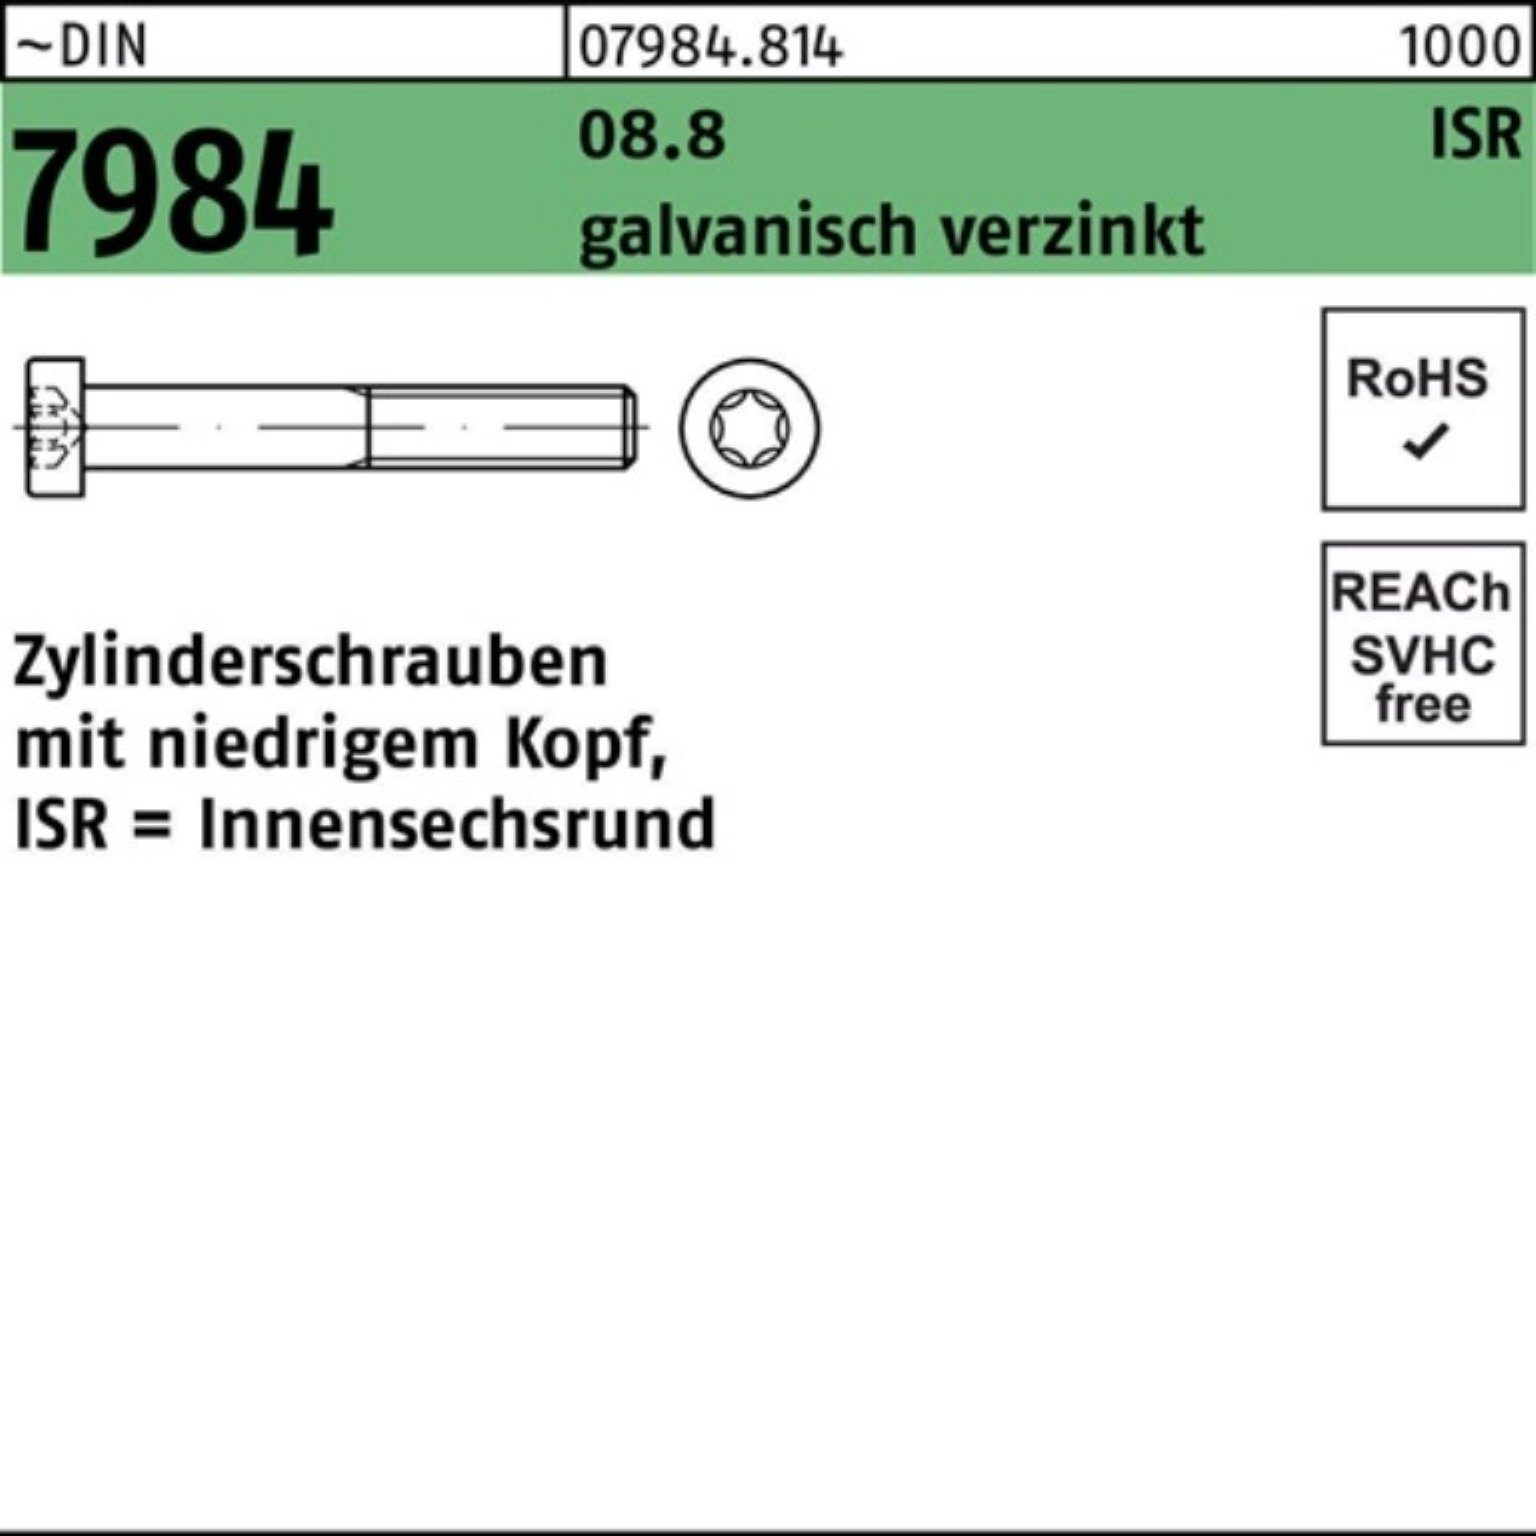 Reyher DIN M6x10-T30 500er 7984 Pack ISR Zylinderschraube Zylinderschraube 8.8 galv.verz. 500S